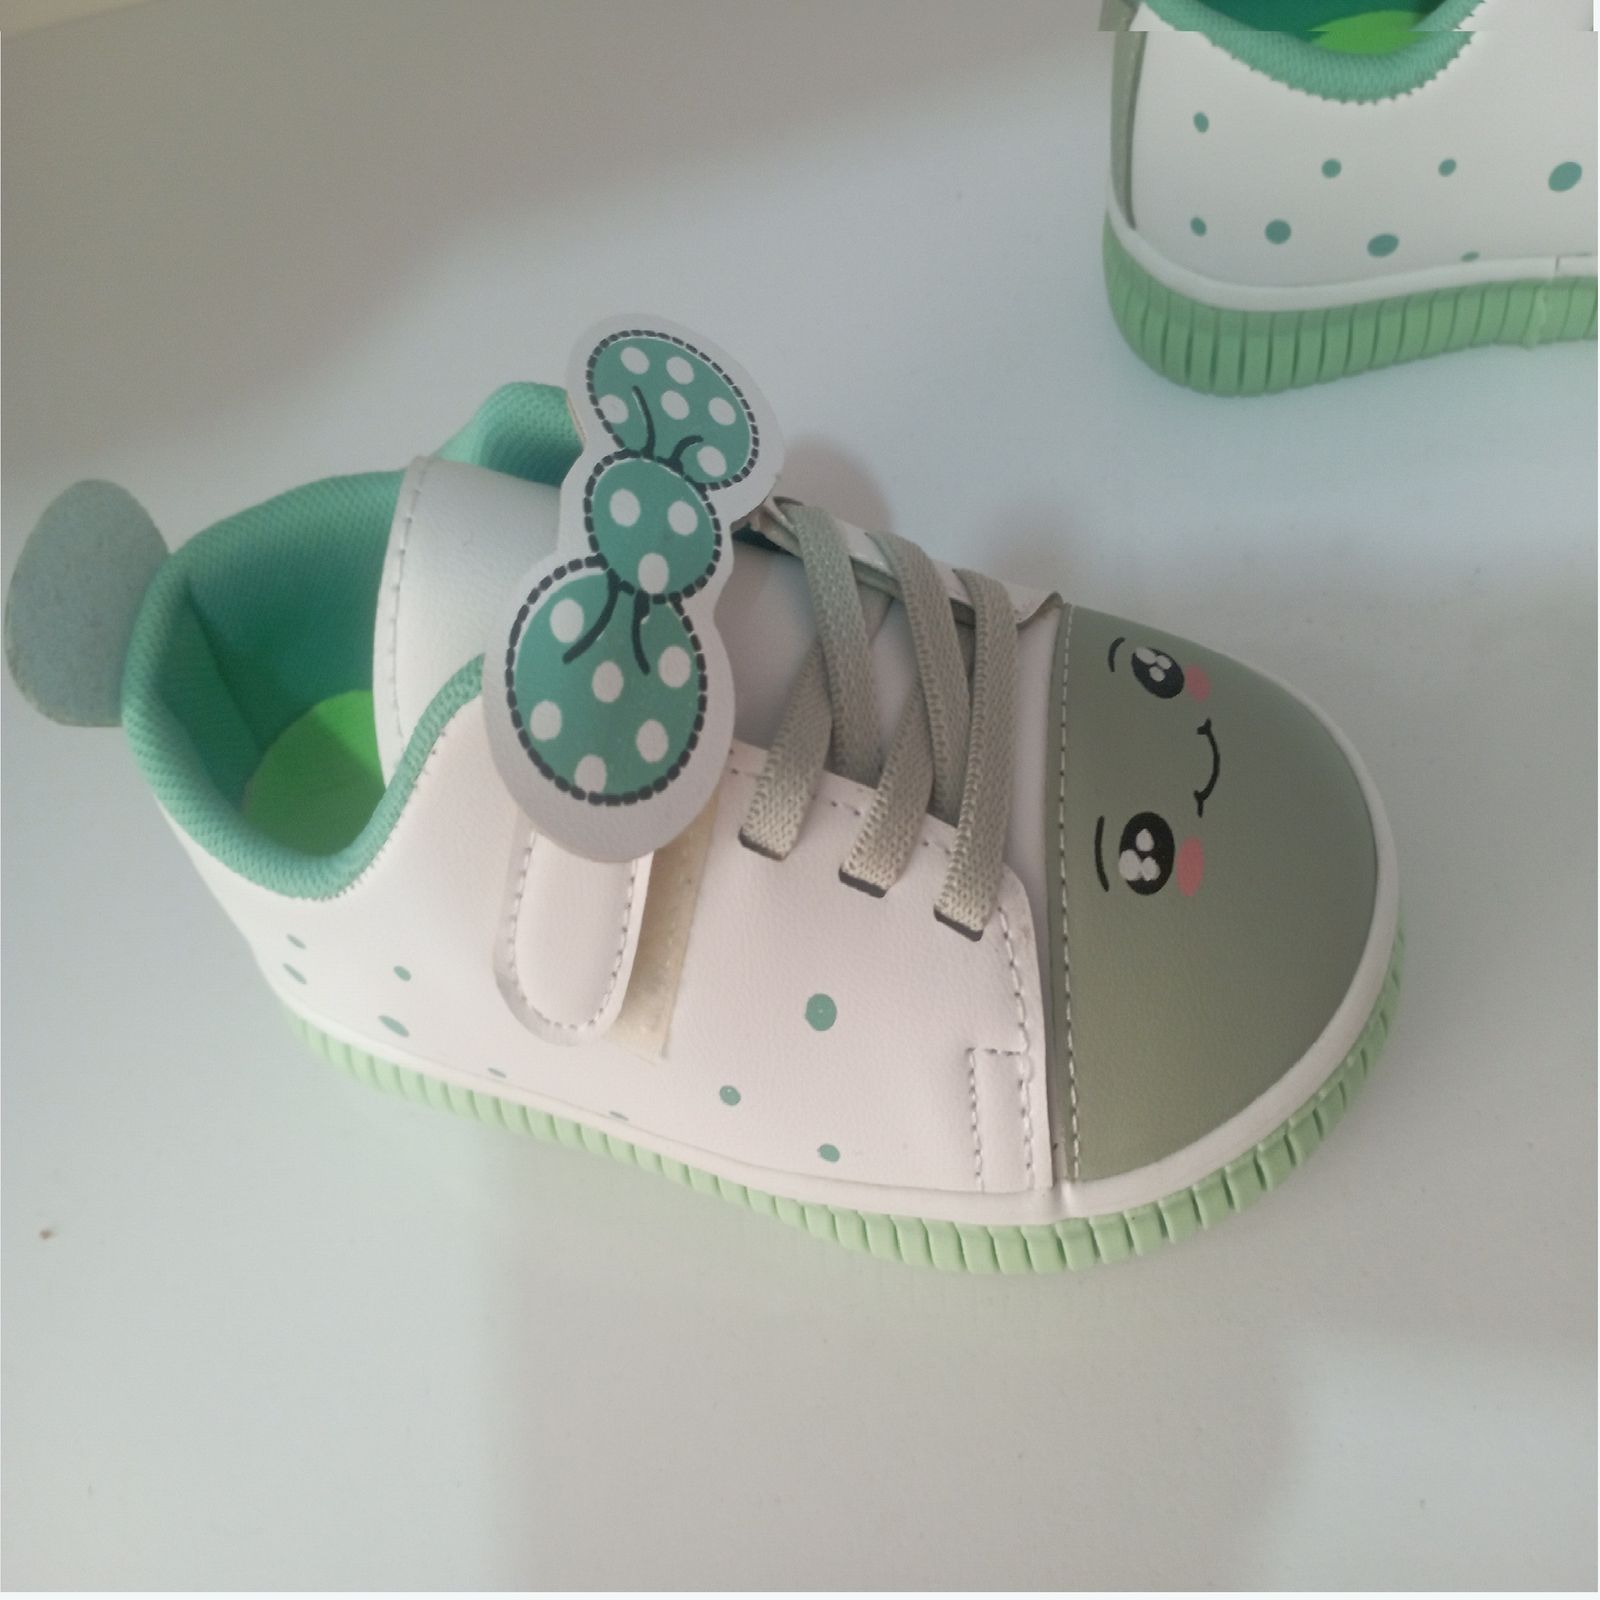  کفش راحتی بچگانه مدل پاپیونی کد 09 رنگ سبز  -  - 2